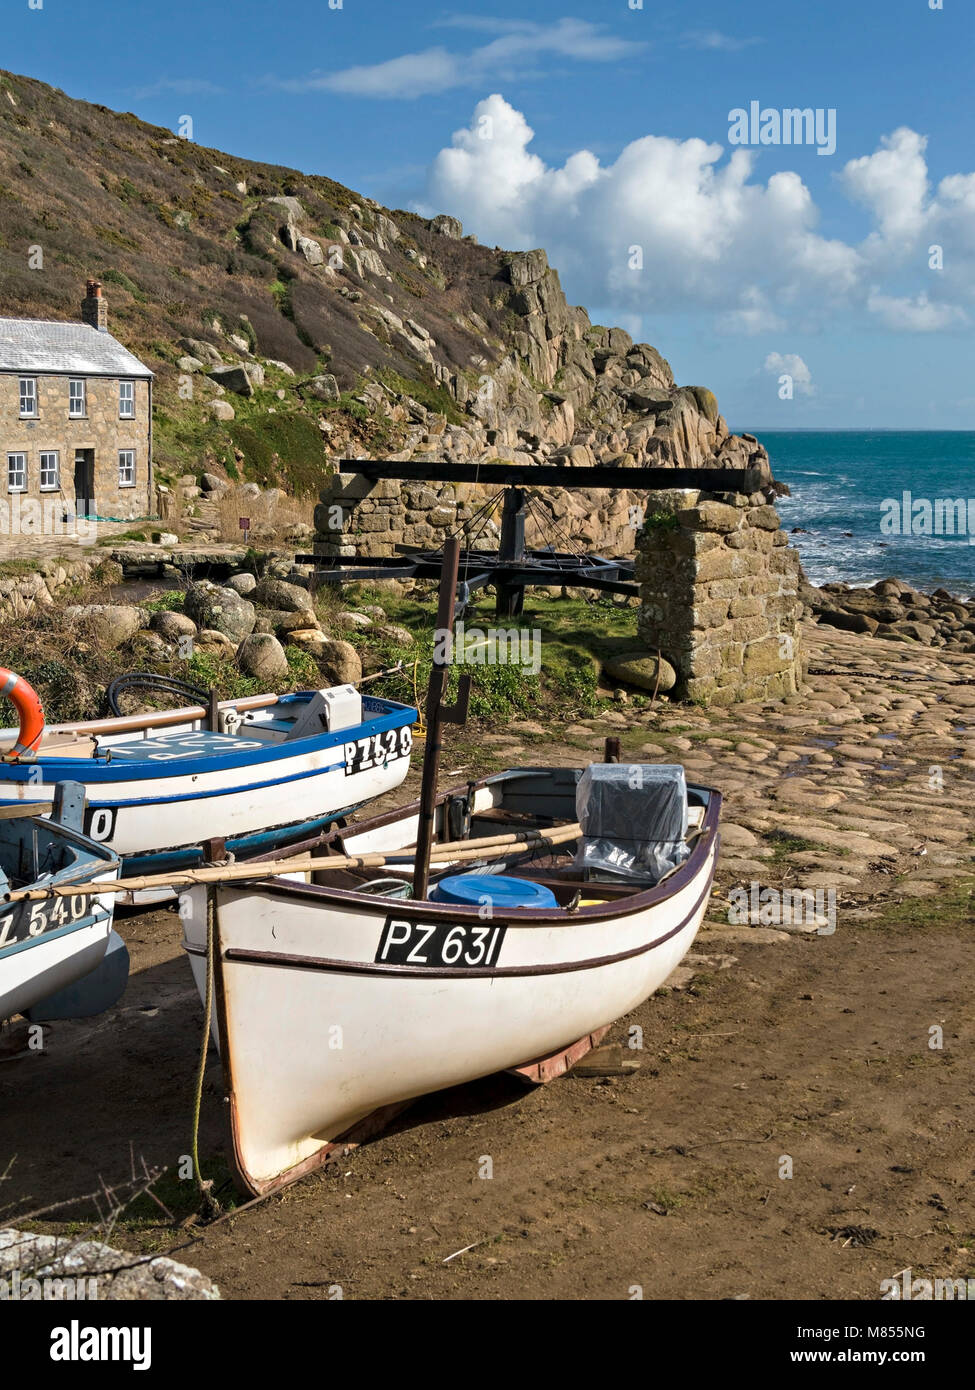 Cornish barche da pesca e argano verricello in barca su uno scalo a Penberth Cove, Cornwall, Inghilterra, Regno Unito. La posizione era usato durante le riprese di Poldark serie TV Foto Stock